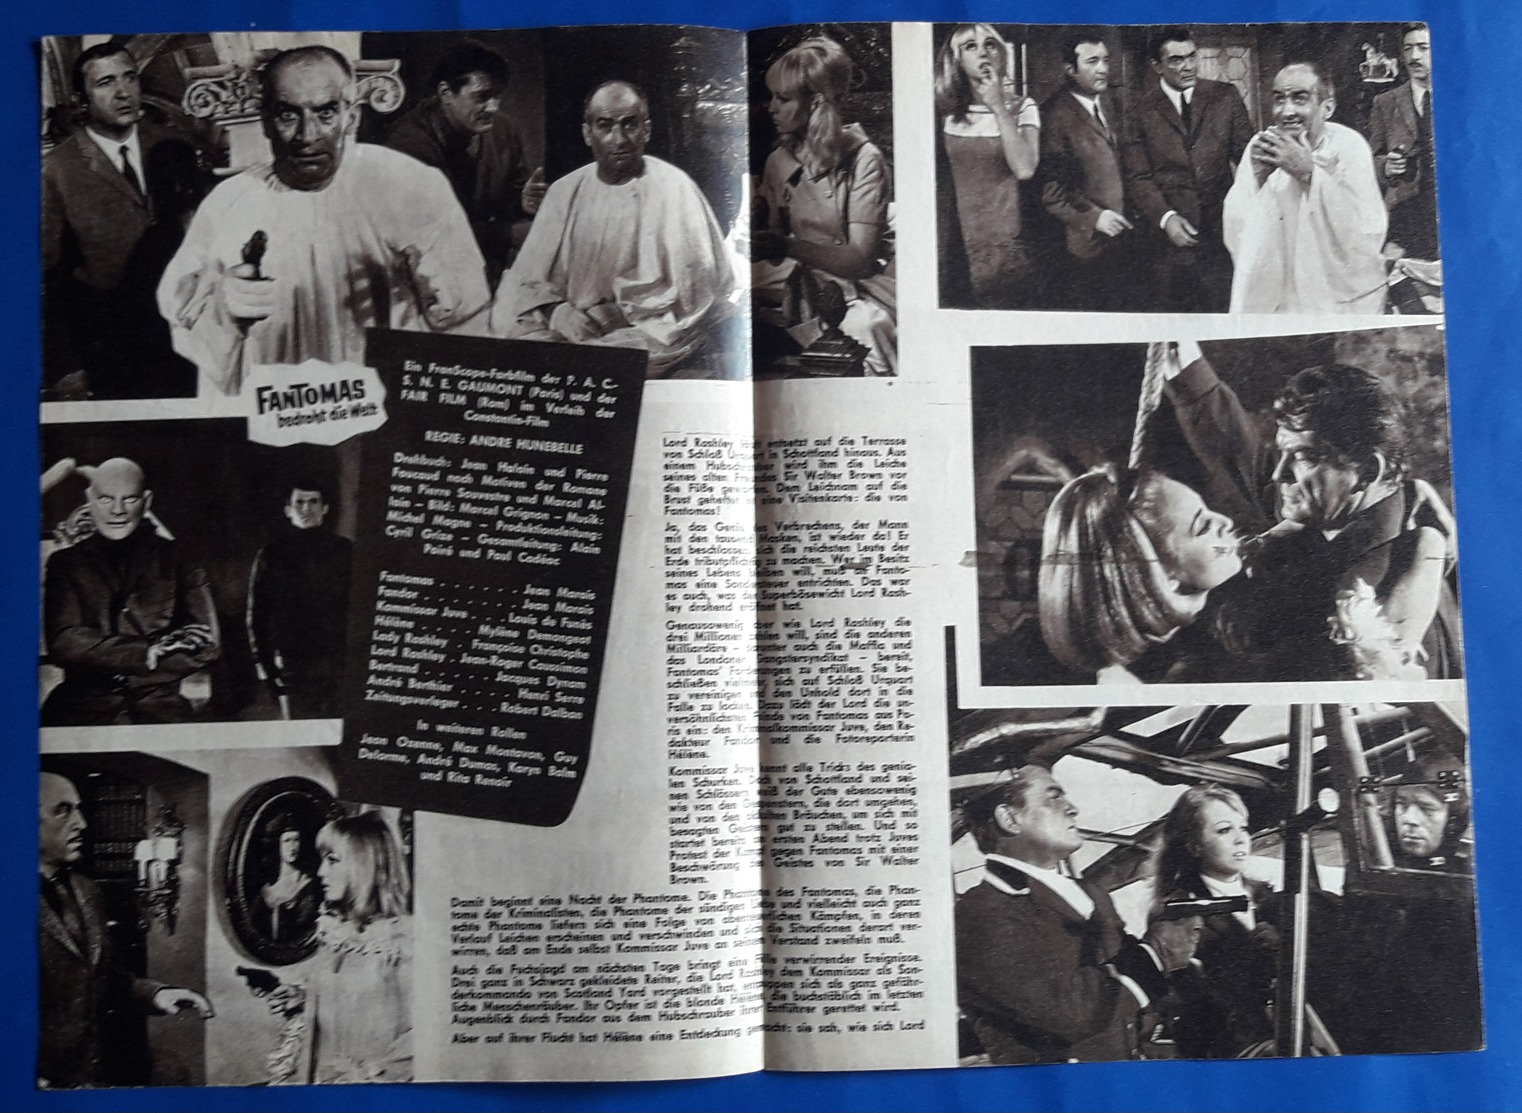 LOUIS DE FUNES / JEAN MARAIS Im Film "FANTOMAS Bedroht Die Welt" # NFP-Filmprogramm Von 1967 # [19-778] - Magazines